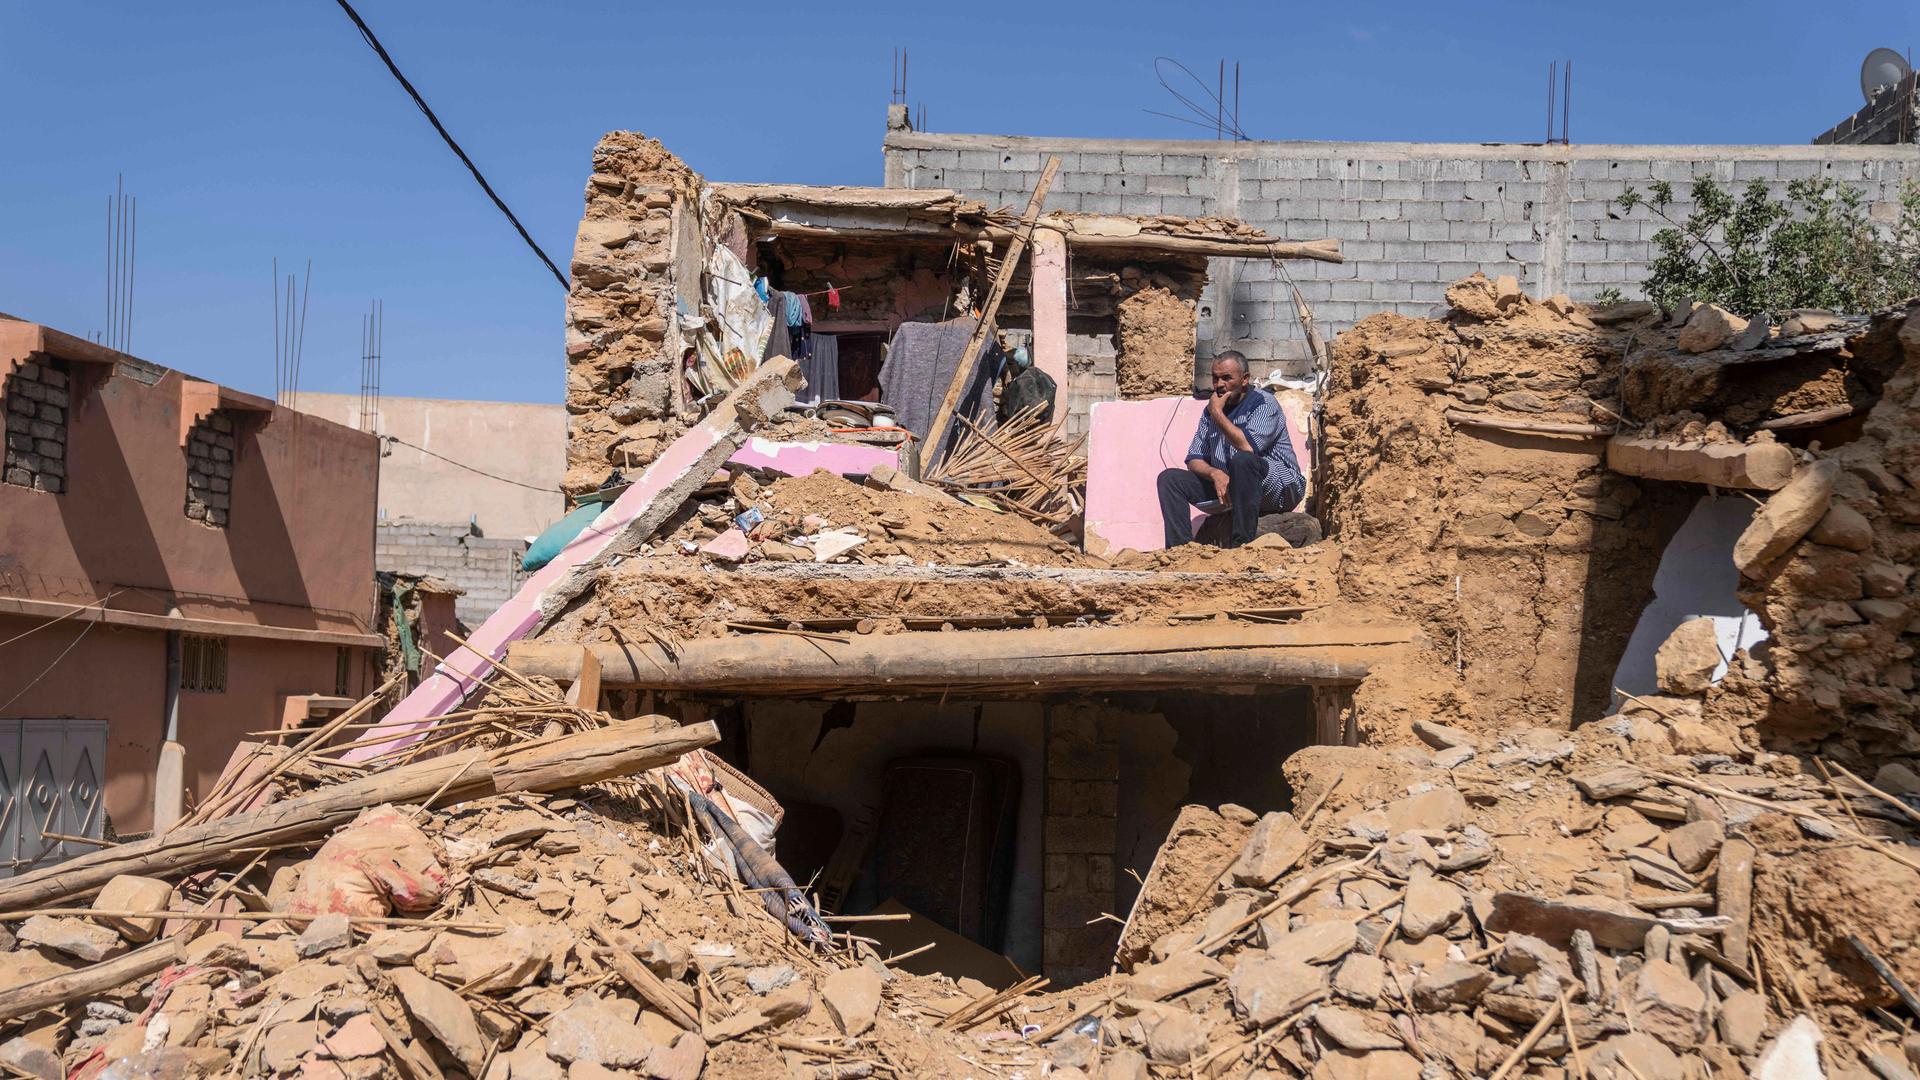 Ein Mann, der seine Frau und seine Tochter bei dem Erdbeben in Marokko verloren hat, sitzt in seinem ehemaligen Haus in der Stadt Amizmiz außerhalb von Marrakesch.